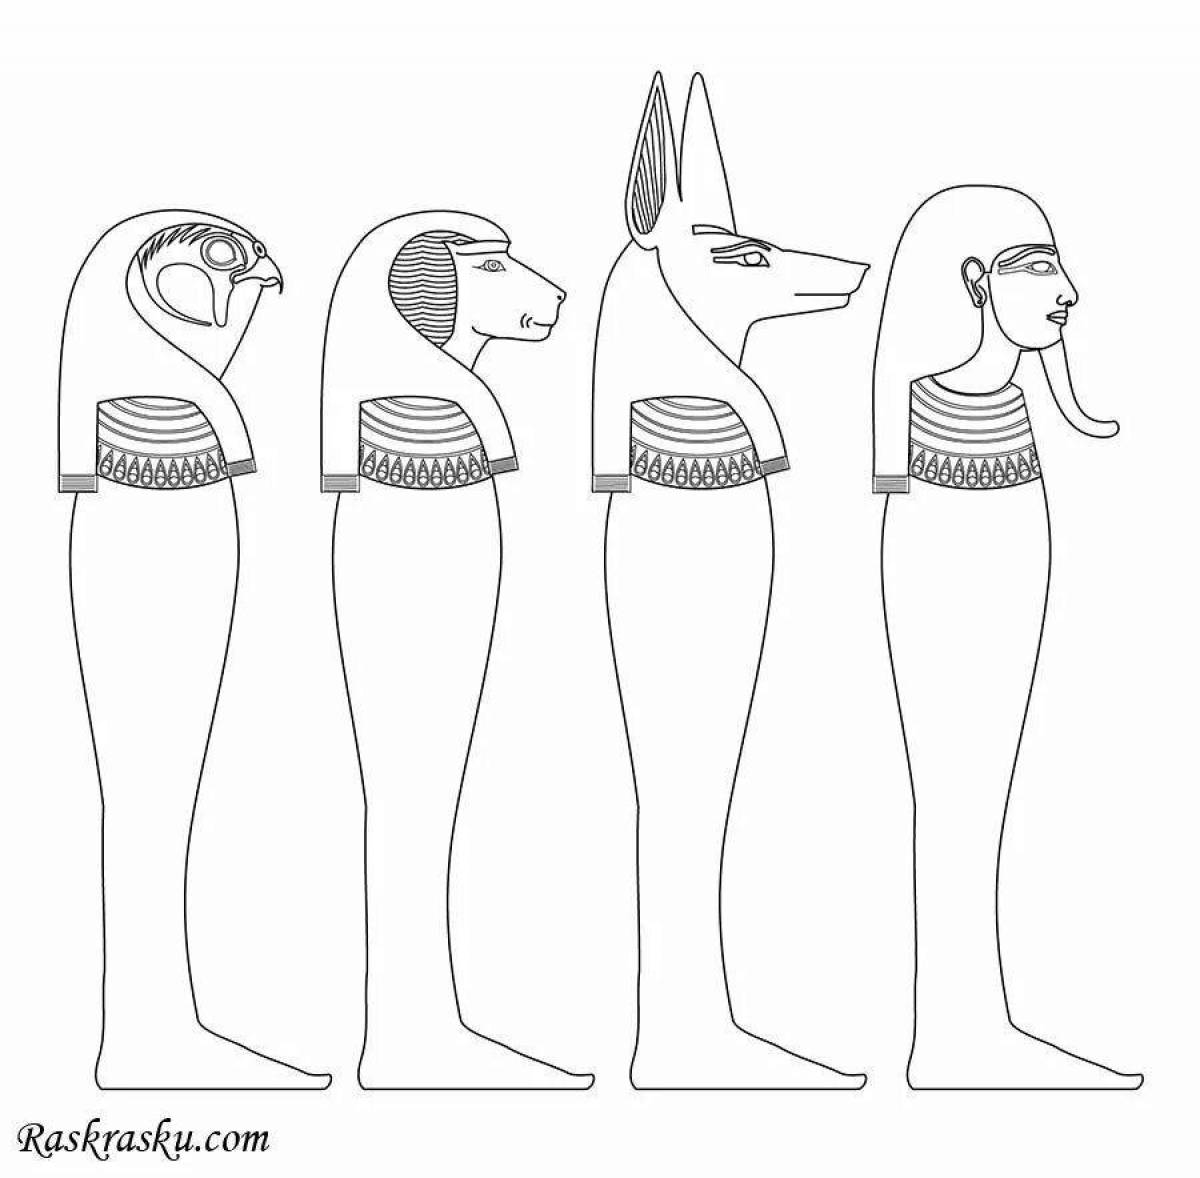 Эффектная раскраска древний египет для детей